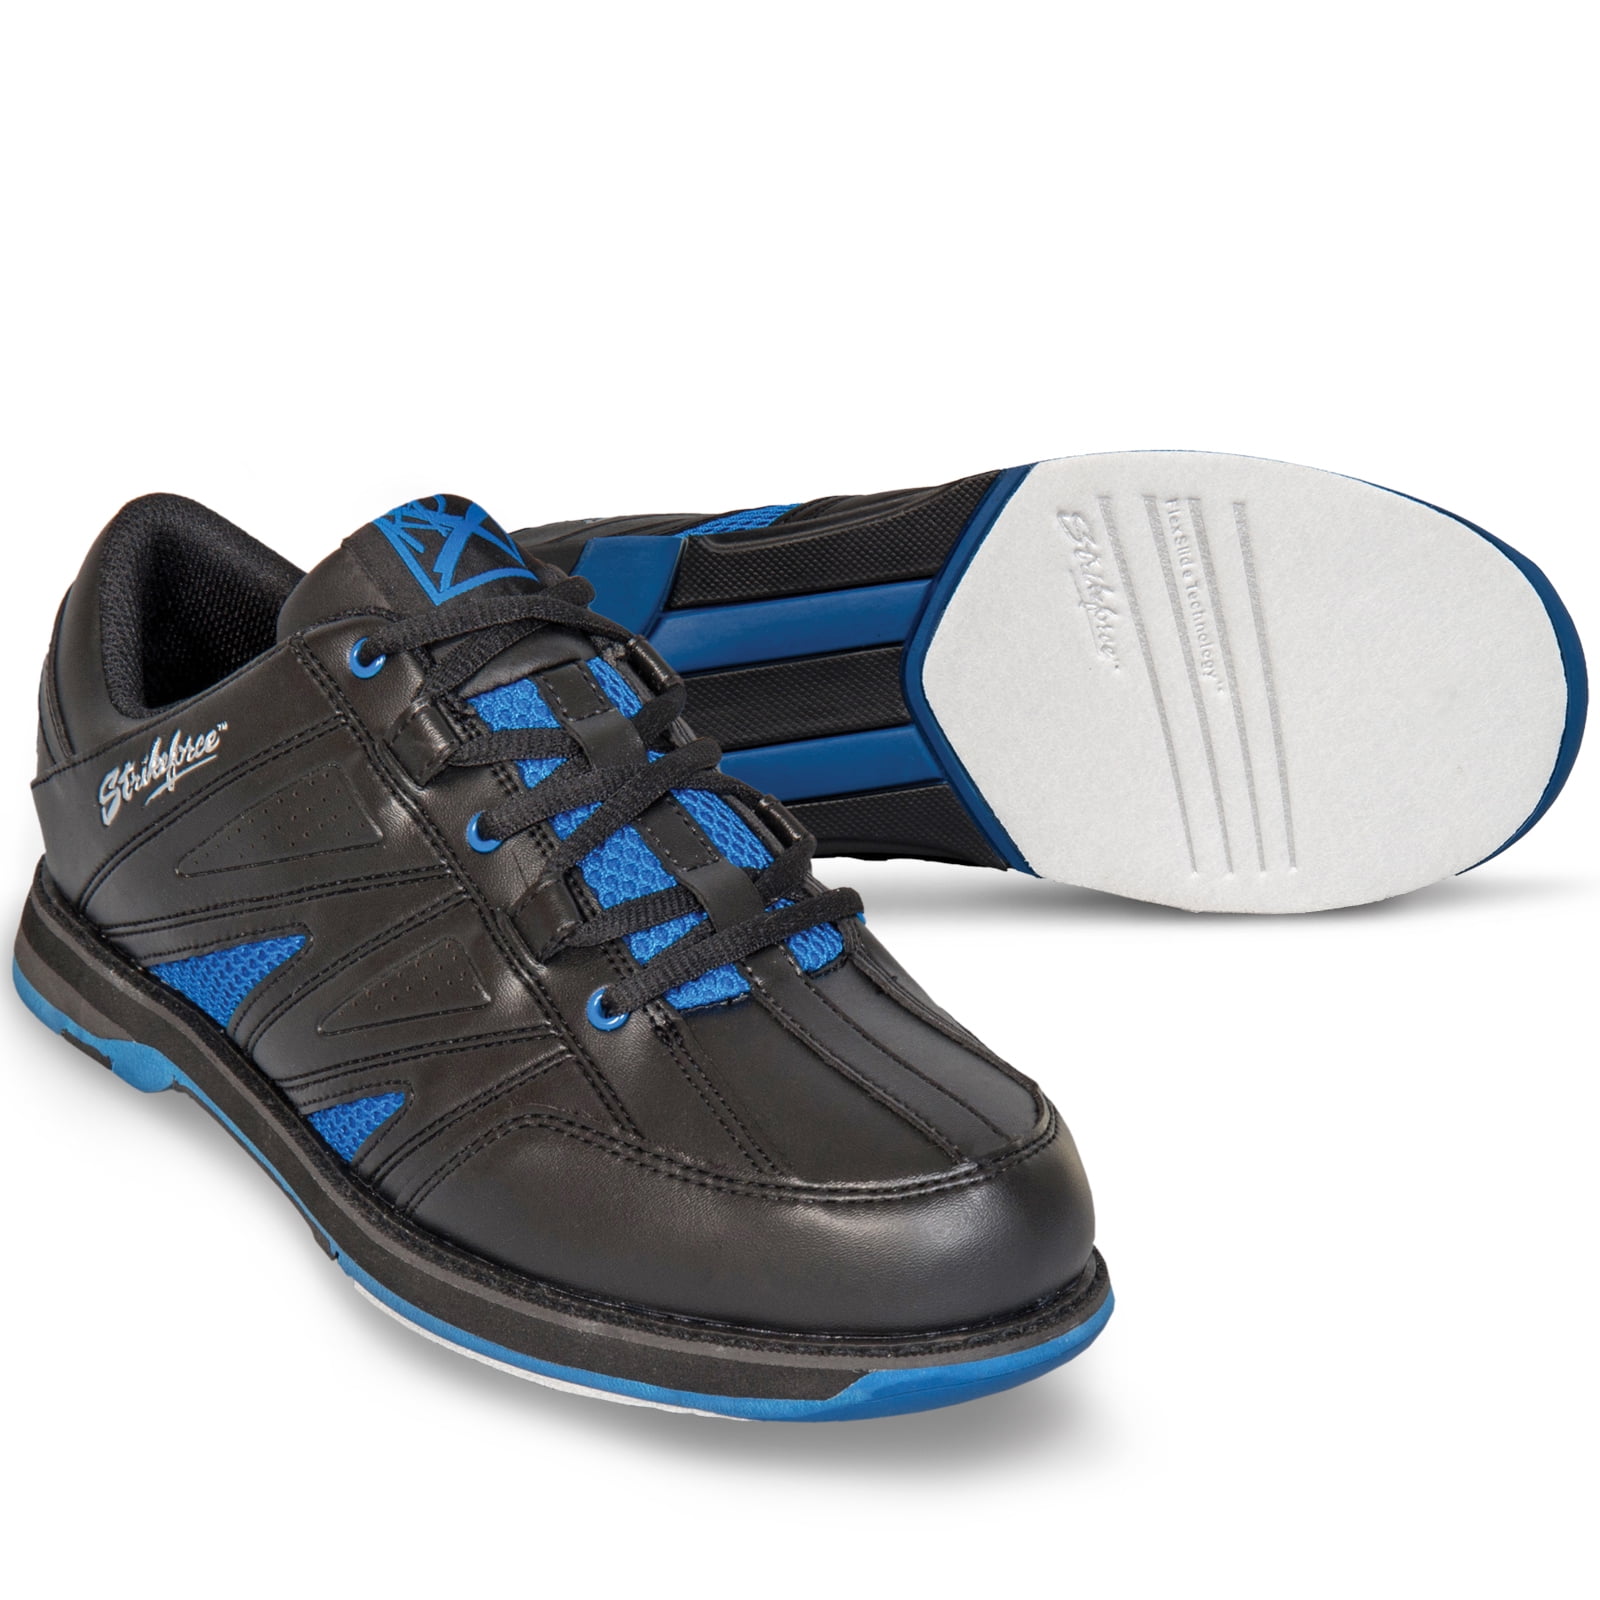 Mens KR Strikeforce WARRIOR Bowling Shoes Black/Blue Size 8 1/2 